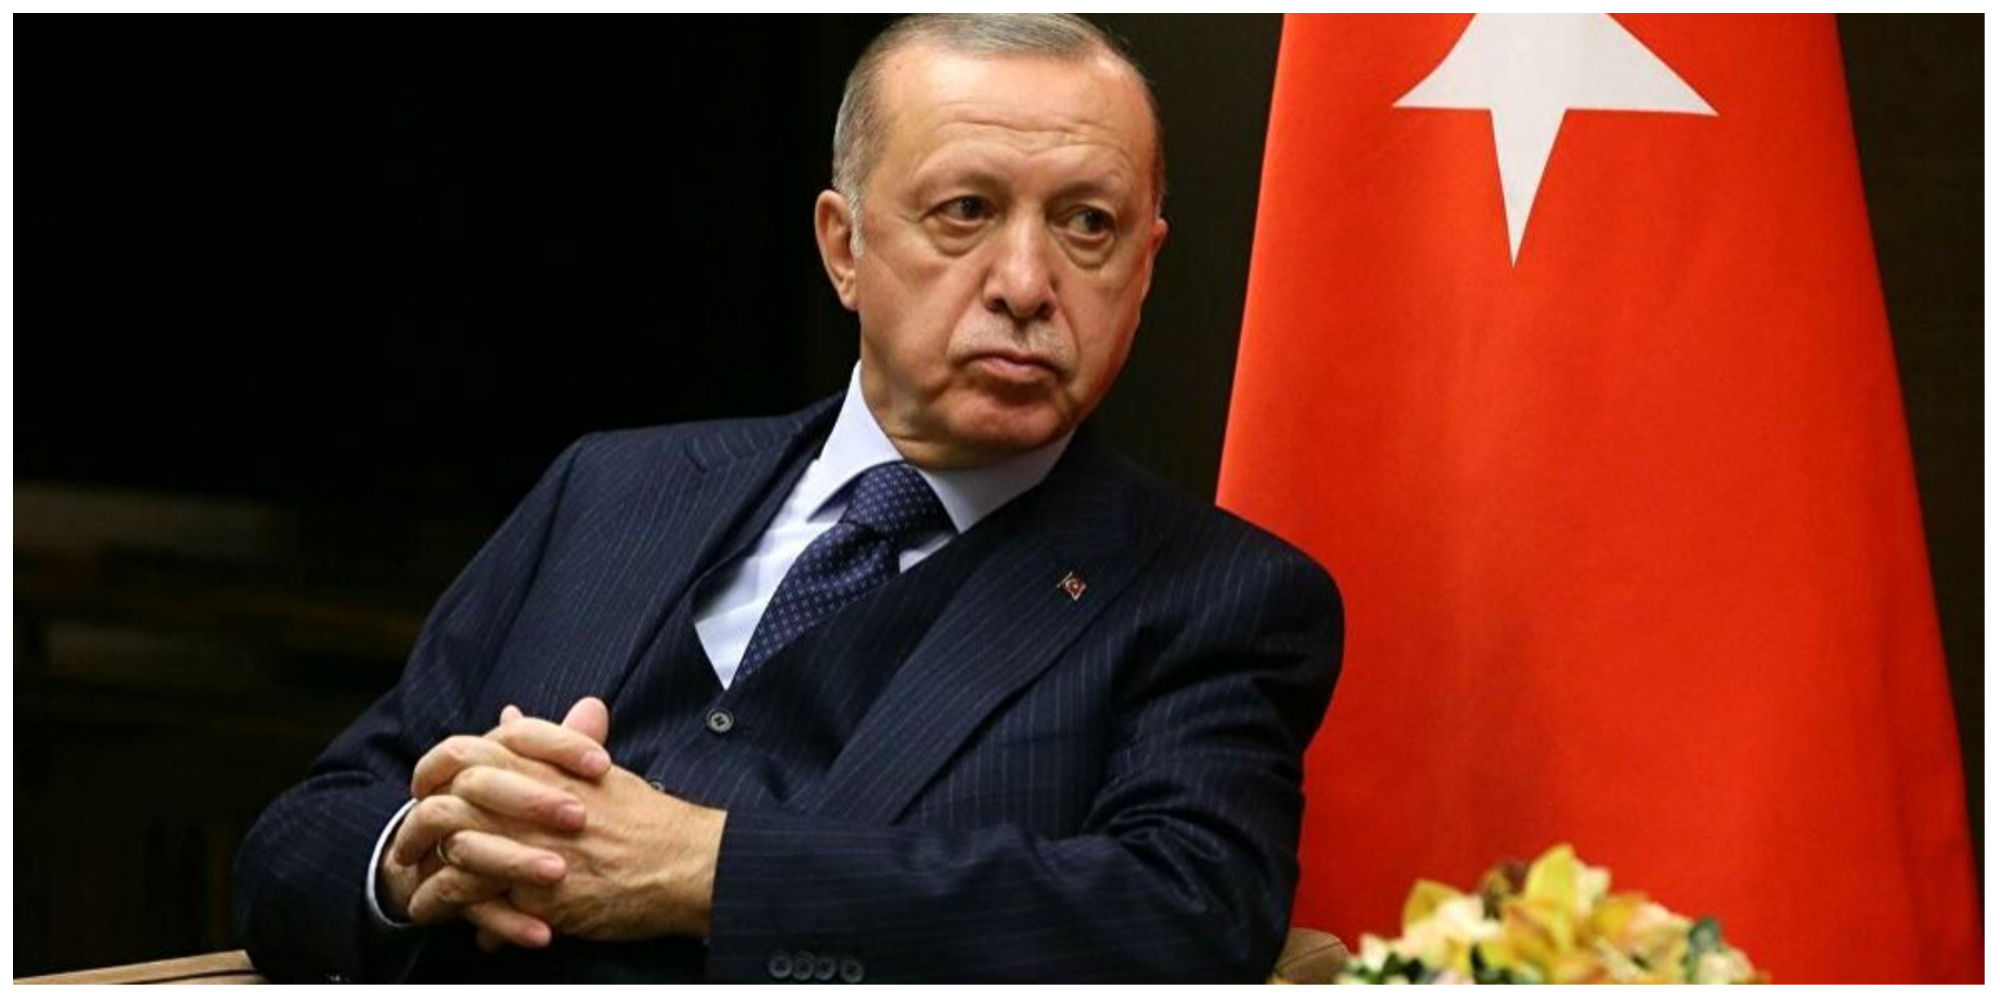  استفاده جالب اردوغان از یک مثل فارسی برای انتقادات تند سیاسی! + فیلم